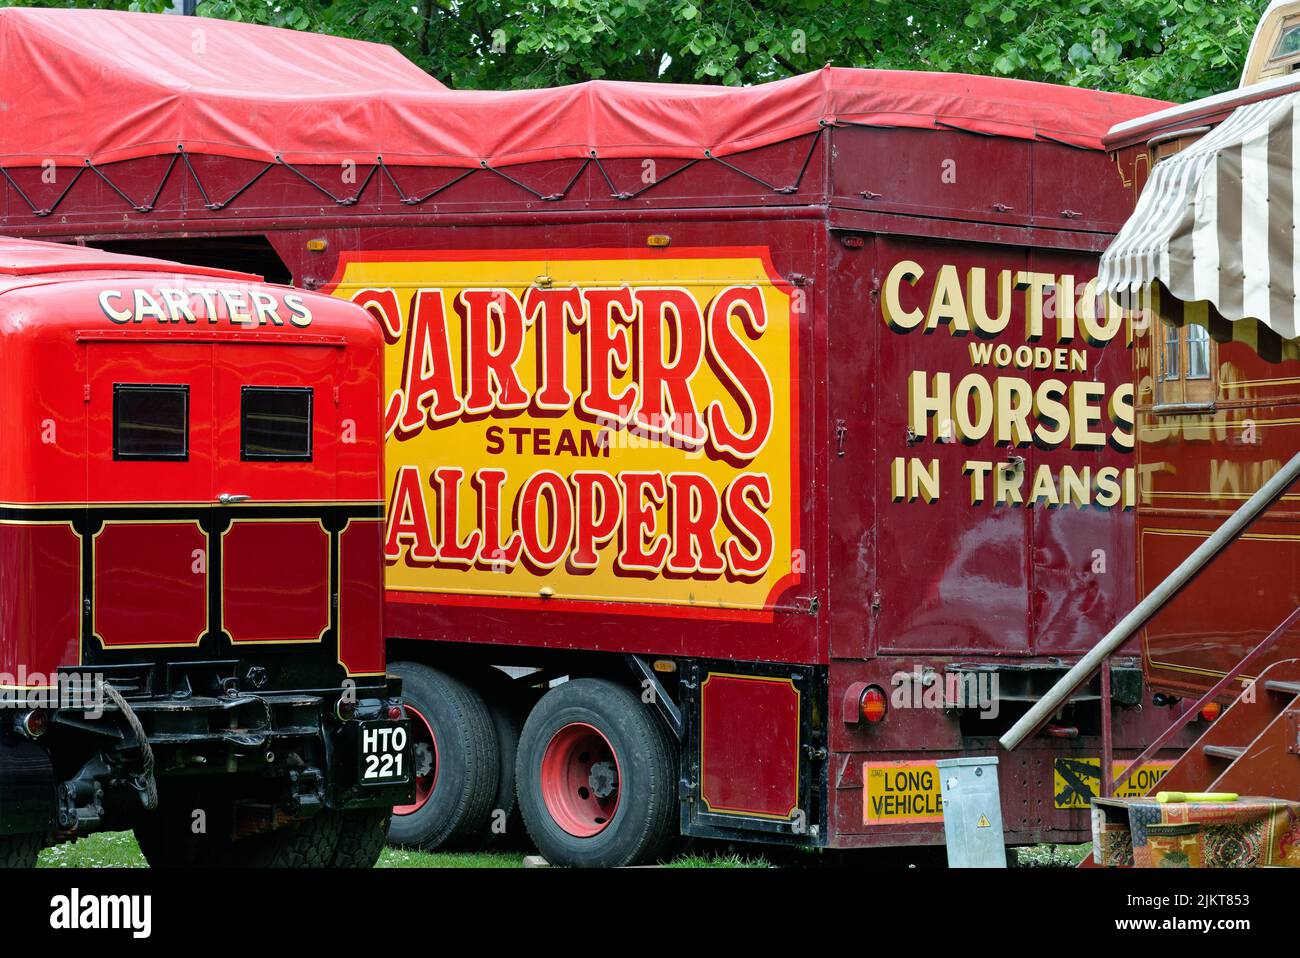 La tradicional y colorida pintura de Carters Steam Fair en un gran camión de transporte, Surrey Inglaterra, Reino Unido Foto de stock